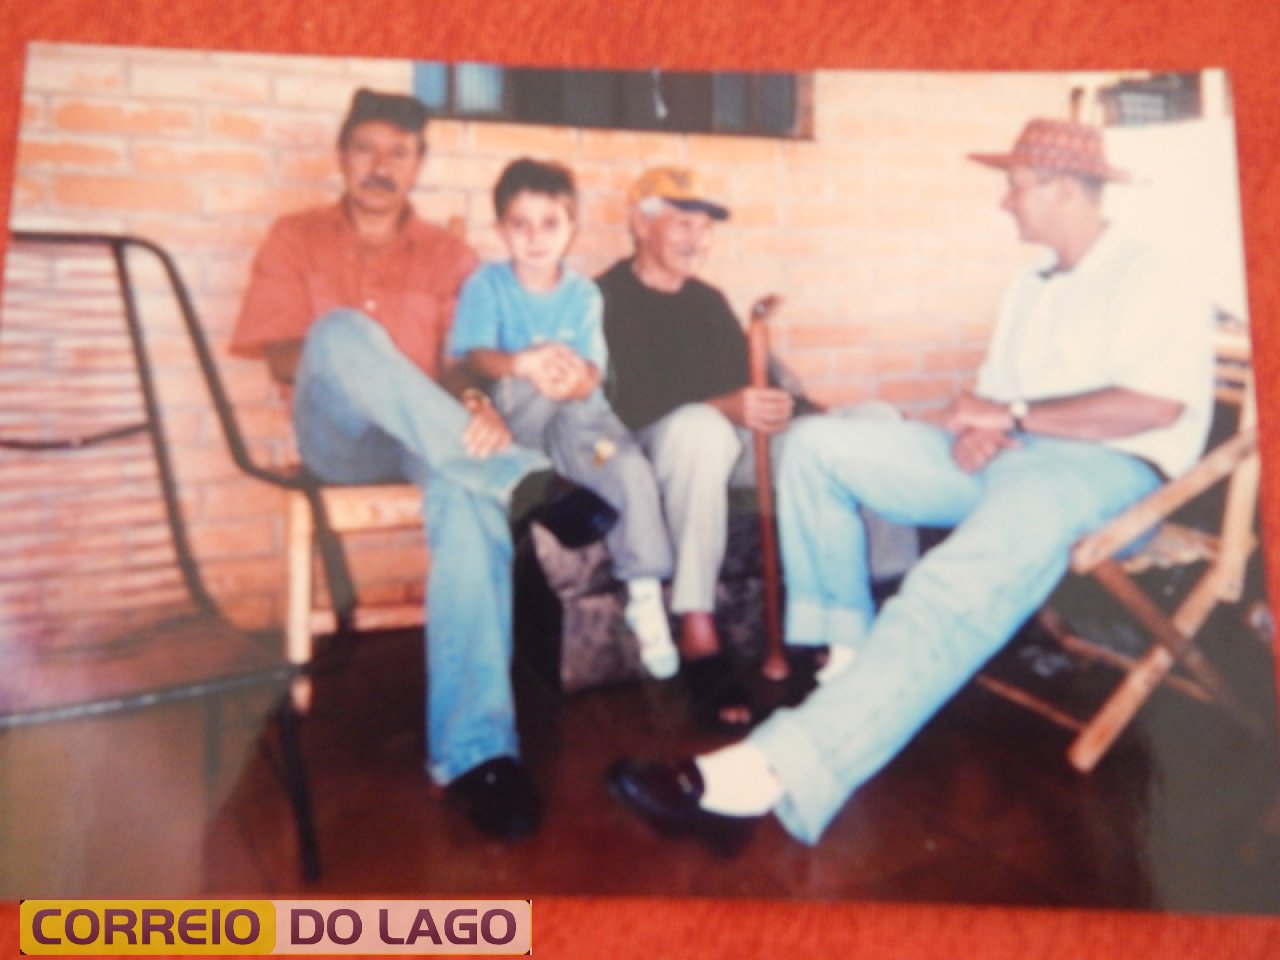 Pedro Ribeiro da Cruz (camisa preta), esquerda: José Granima da Cruz, no colo o neto Ricardo Eggers, filho de Luis Eggers (direita da foto).